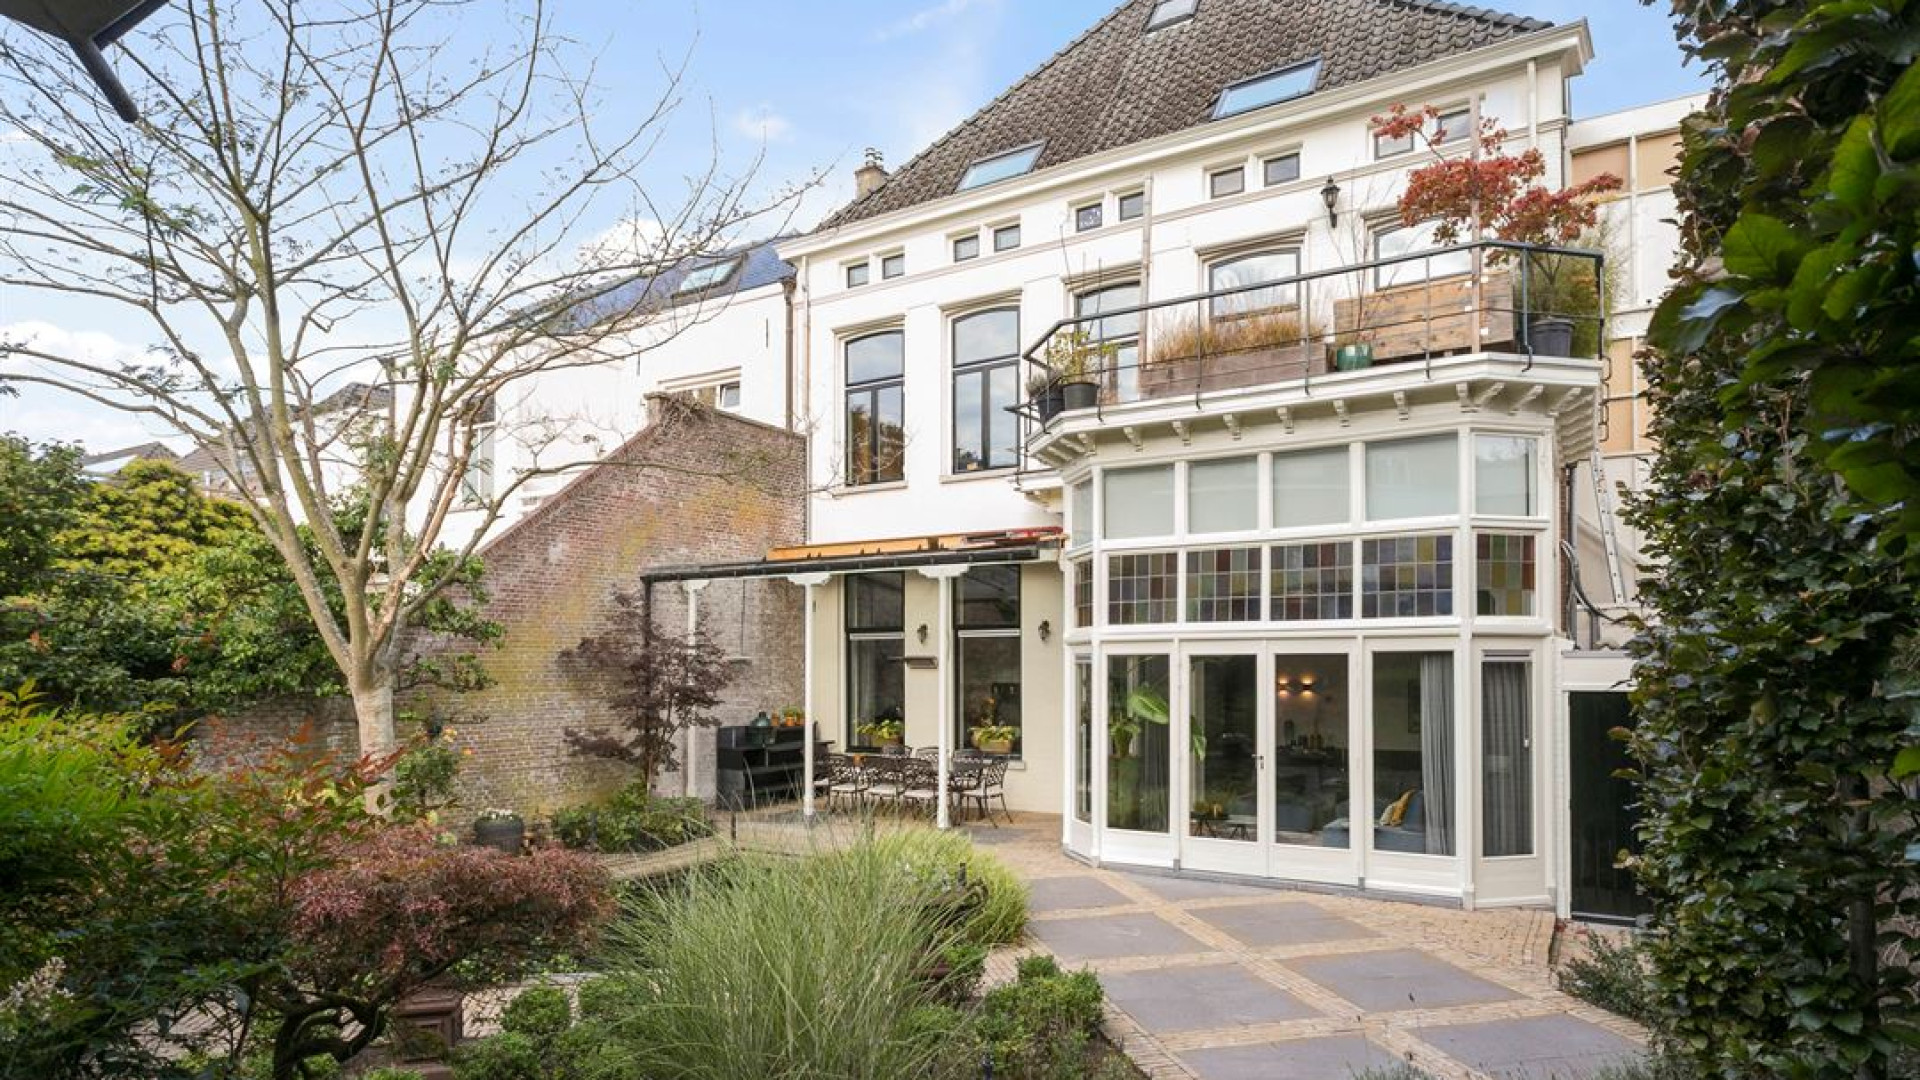 ZIEN: Marian Trott uit BB Vol Liefde koopt dit huis in Den Bosch 4